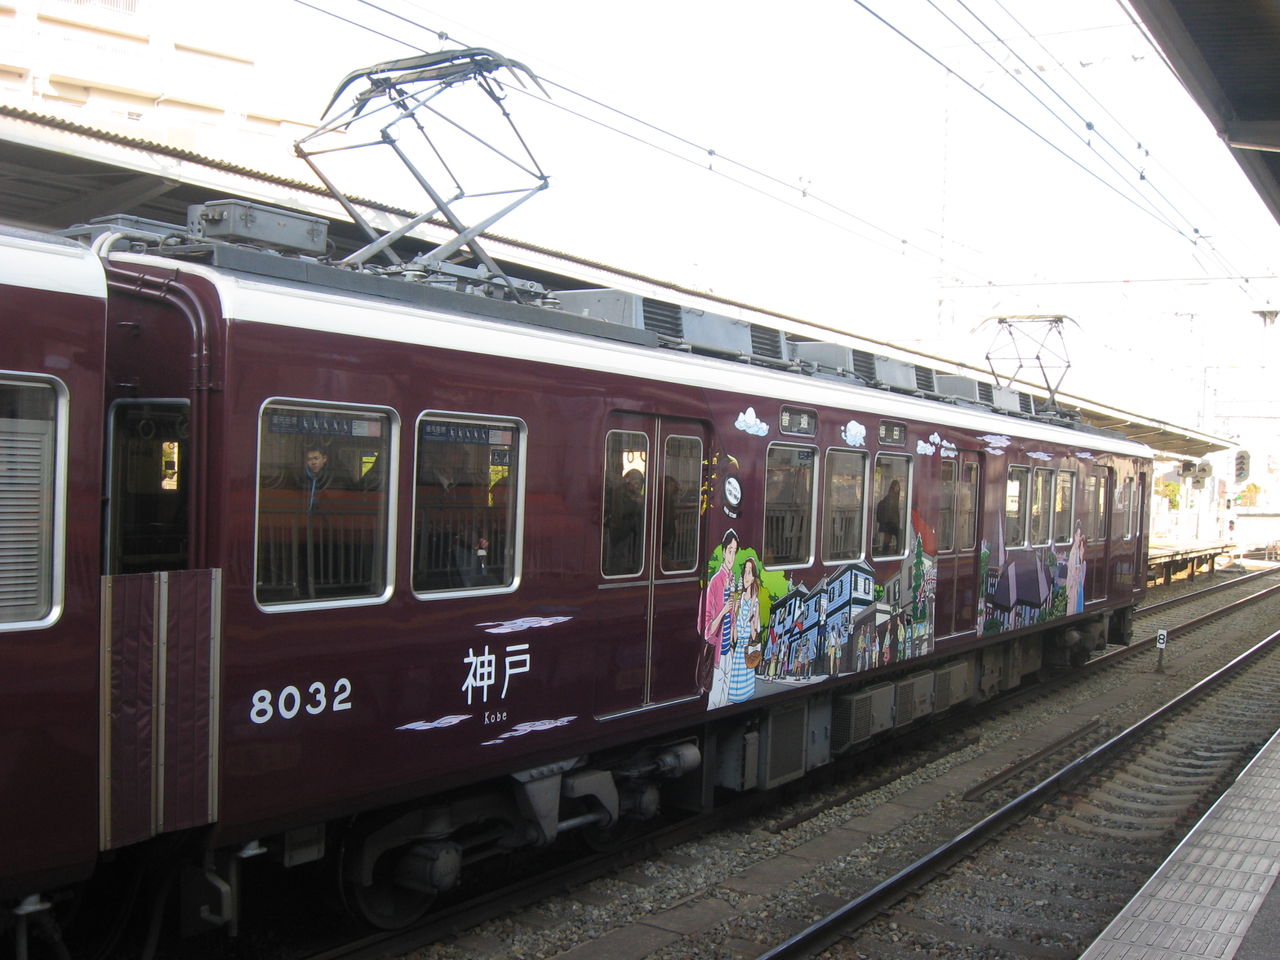 阪急電鉄の観光スポットラッピング電車 わたせせいぞうさんと古都 そしてリラックマ電車再び Ske48とエアバスa380超絶推し男のblog